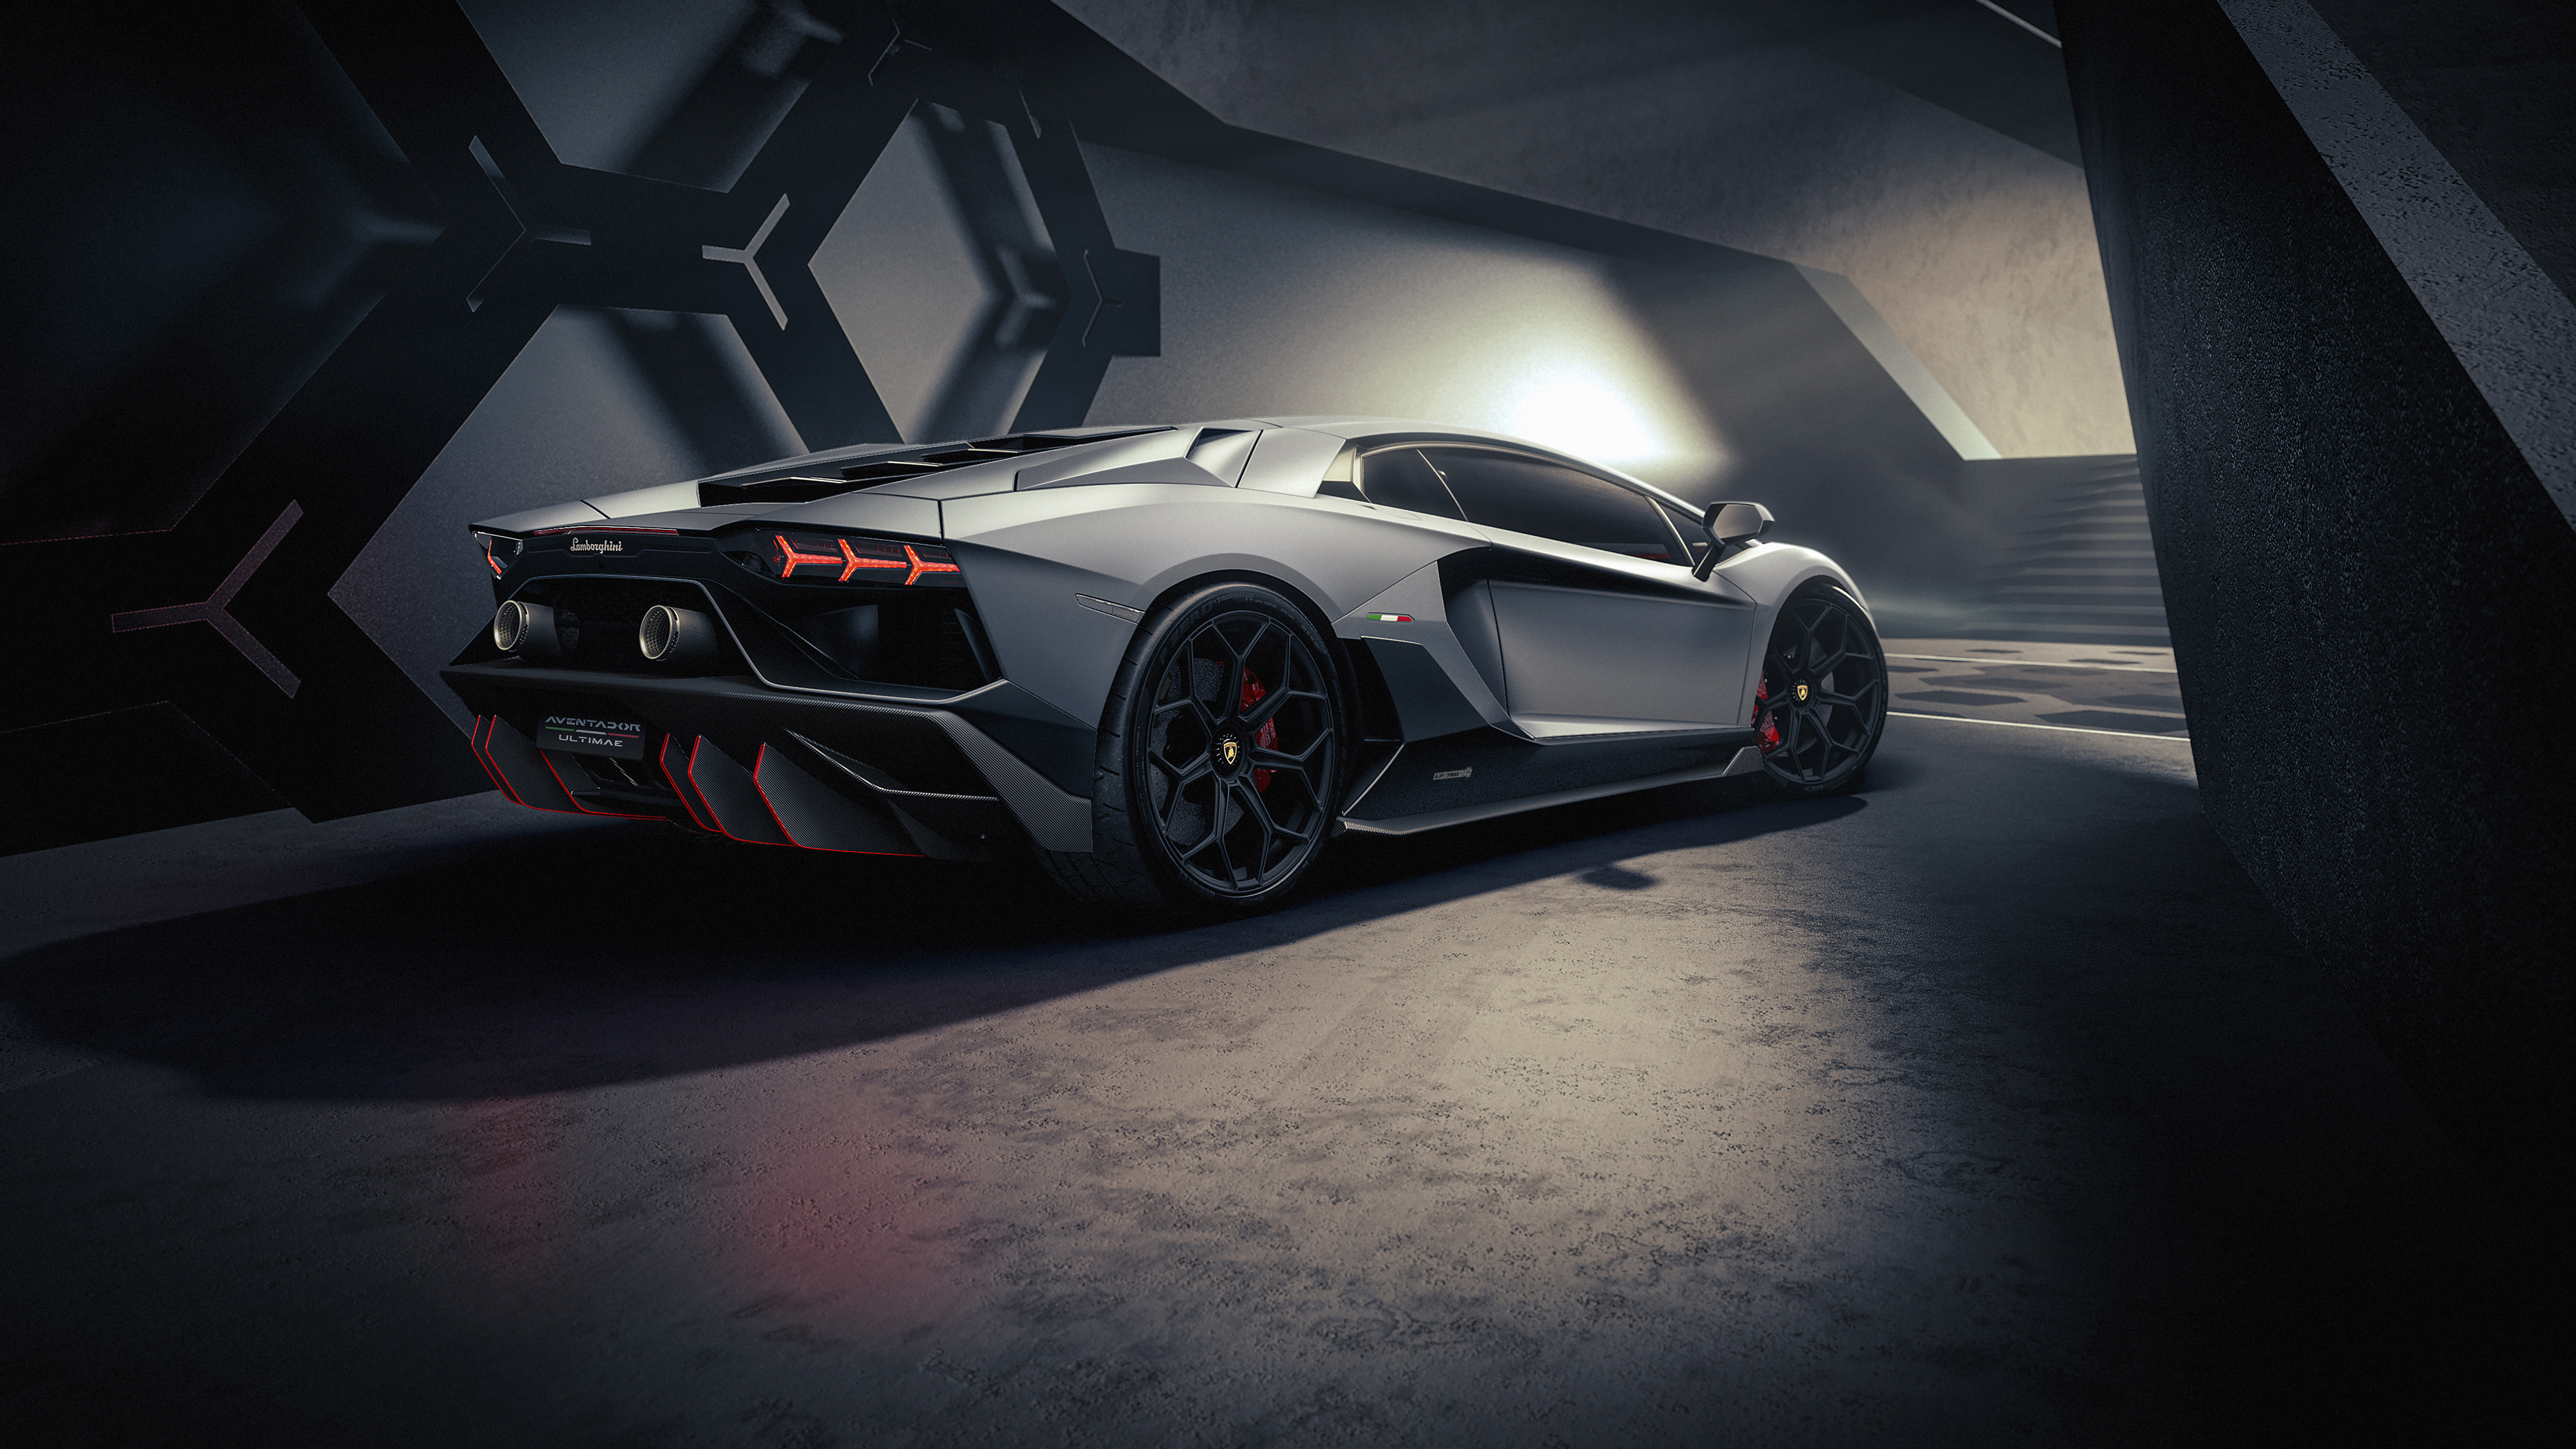 Lamborghini Aventador: Bạn có muốn thỏa mãn niềm đam mê xe hơi của mình? Hãy xem ngay hình ảnh chiếc Lamborghini Aventador, một siêu xe đỉnh cao về công nghệ và thể thao. Hãy thưởng thức vẻ đẹp tuyệt vời của chiếc xe này trên hình ảnh chất lượng cao mà chúng tôi cung cấp.